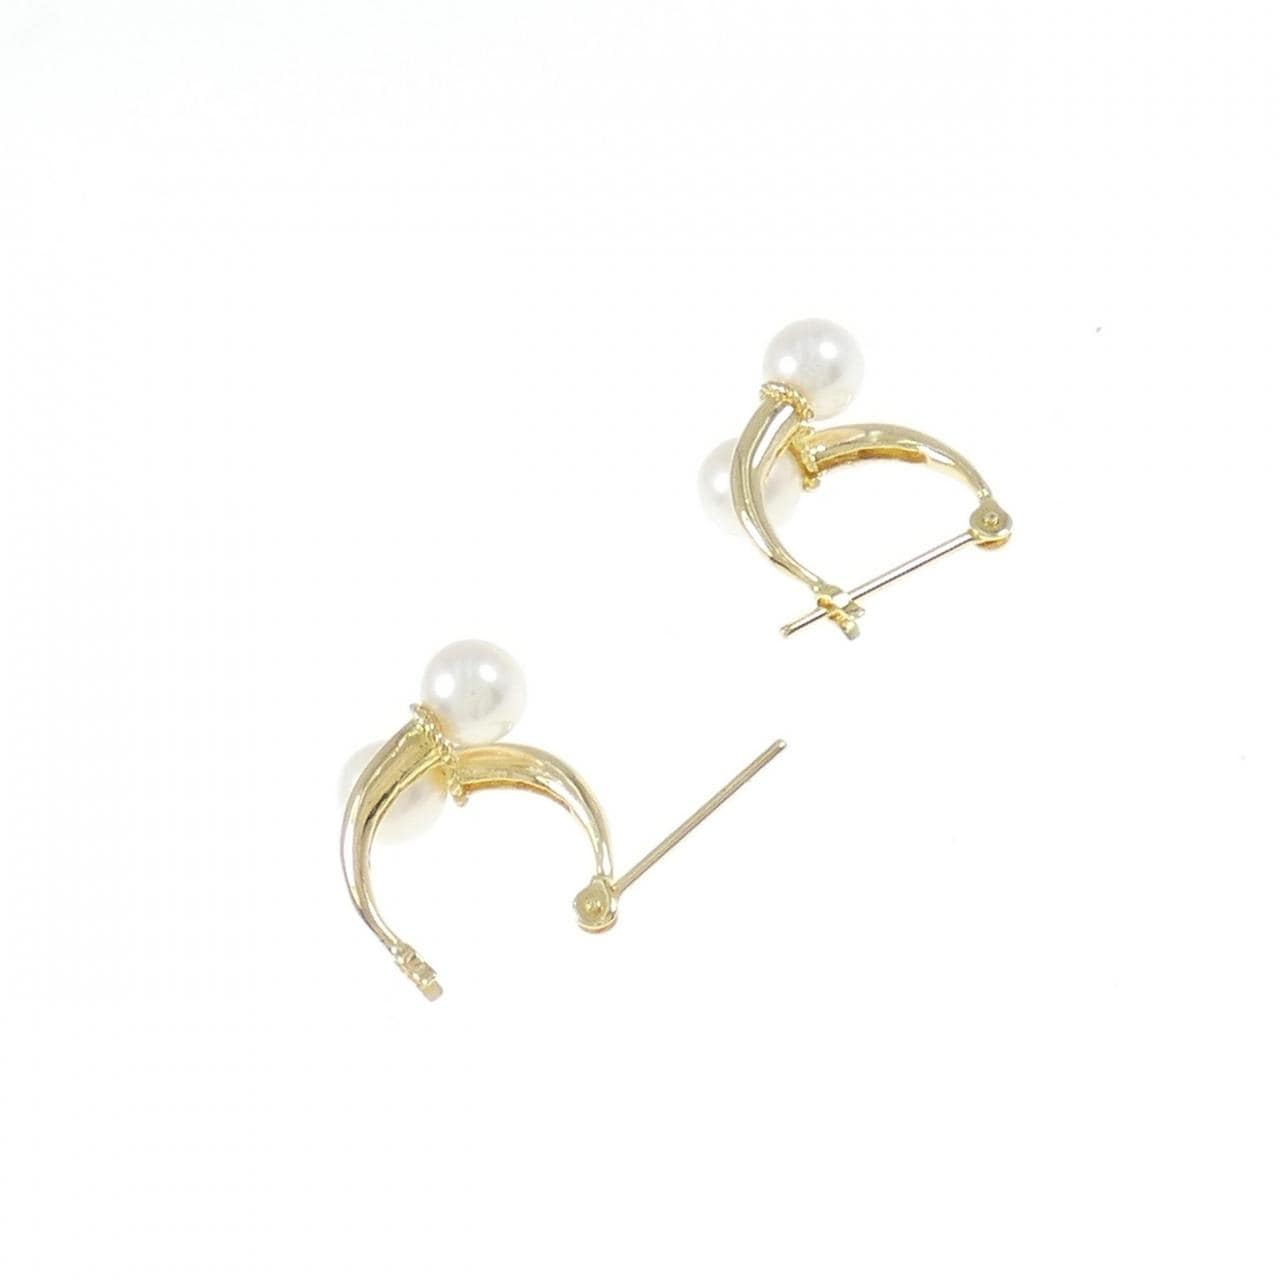 K18YG freshwater pearl earrings